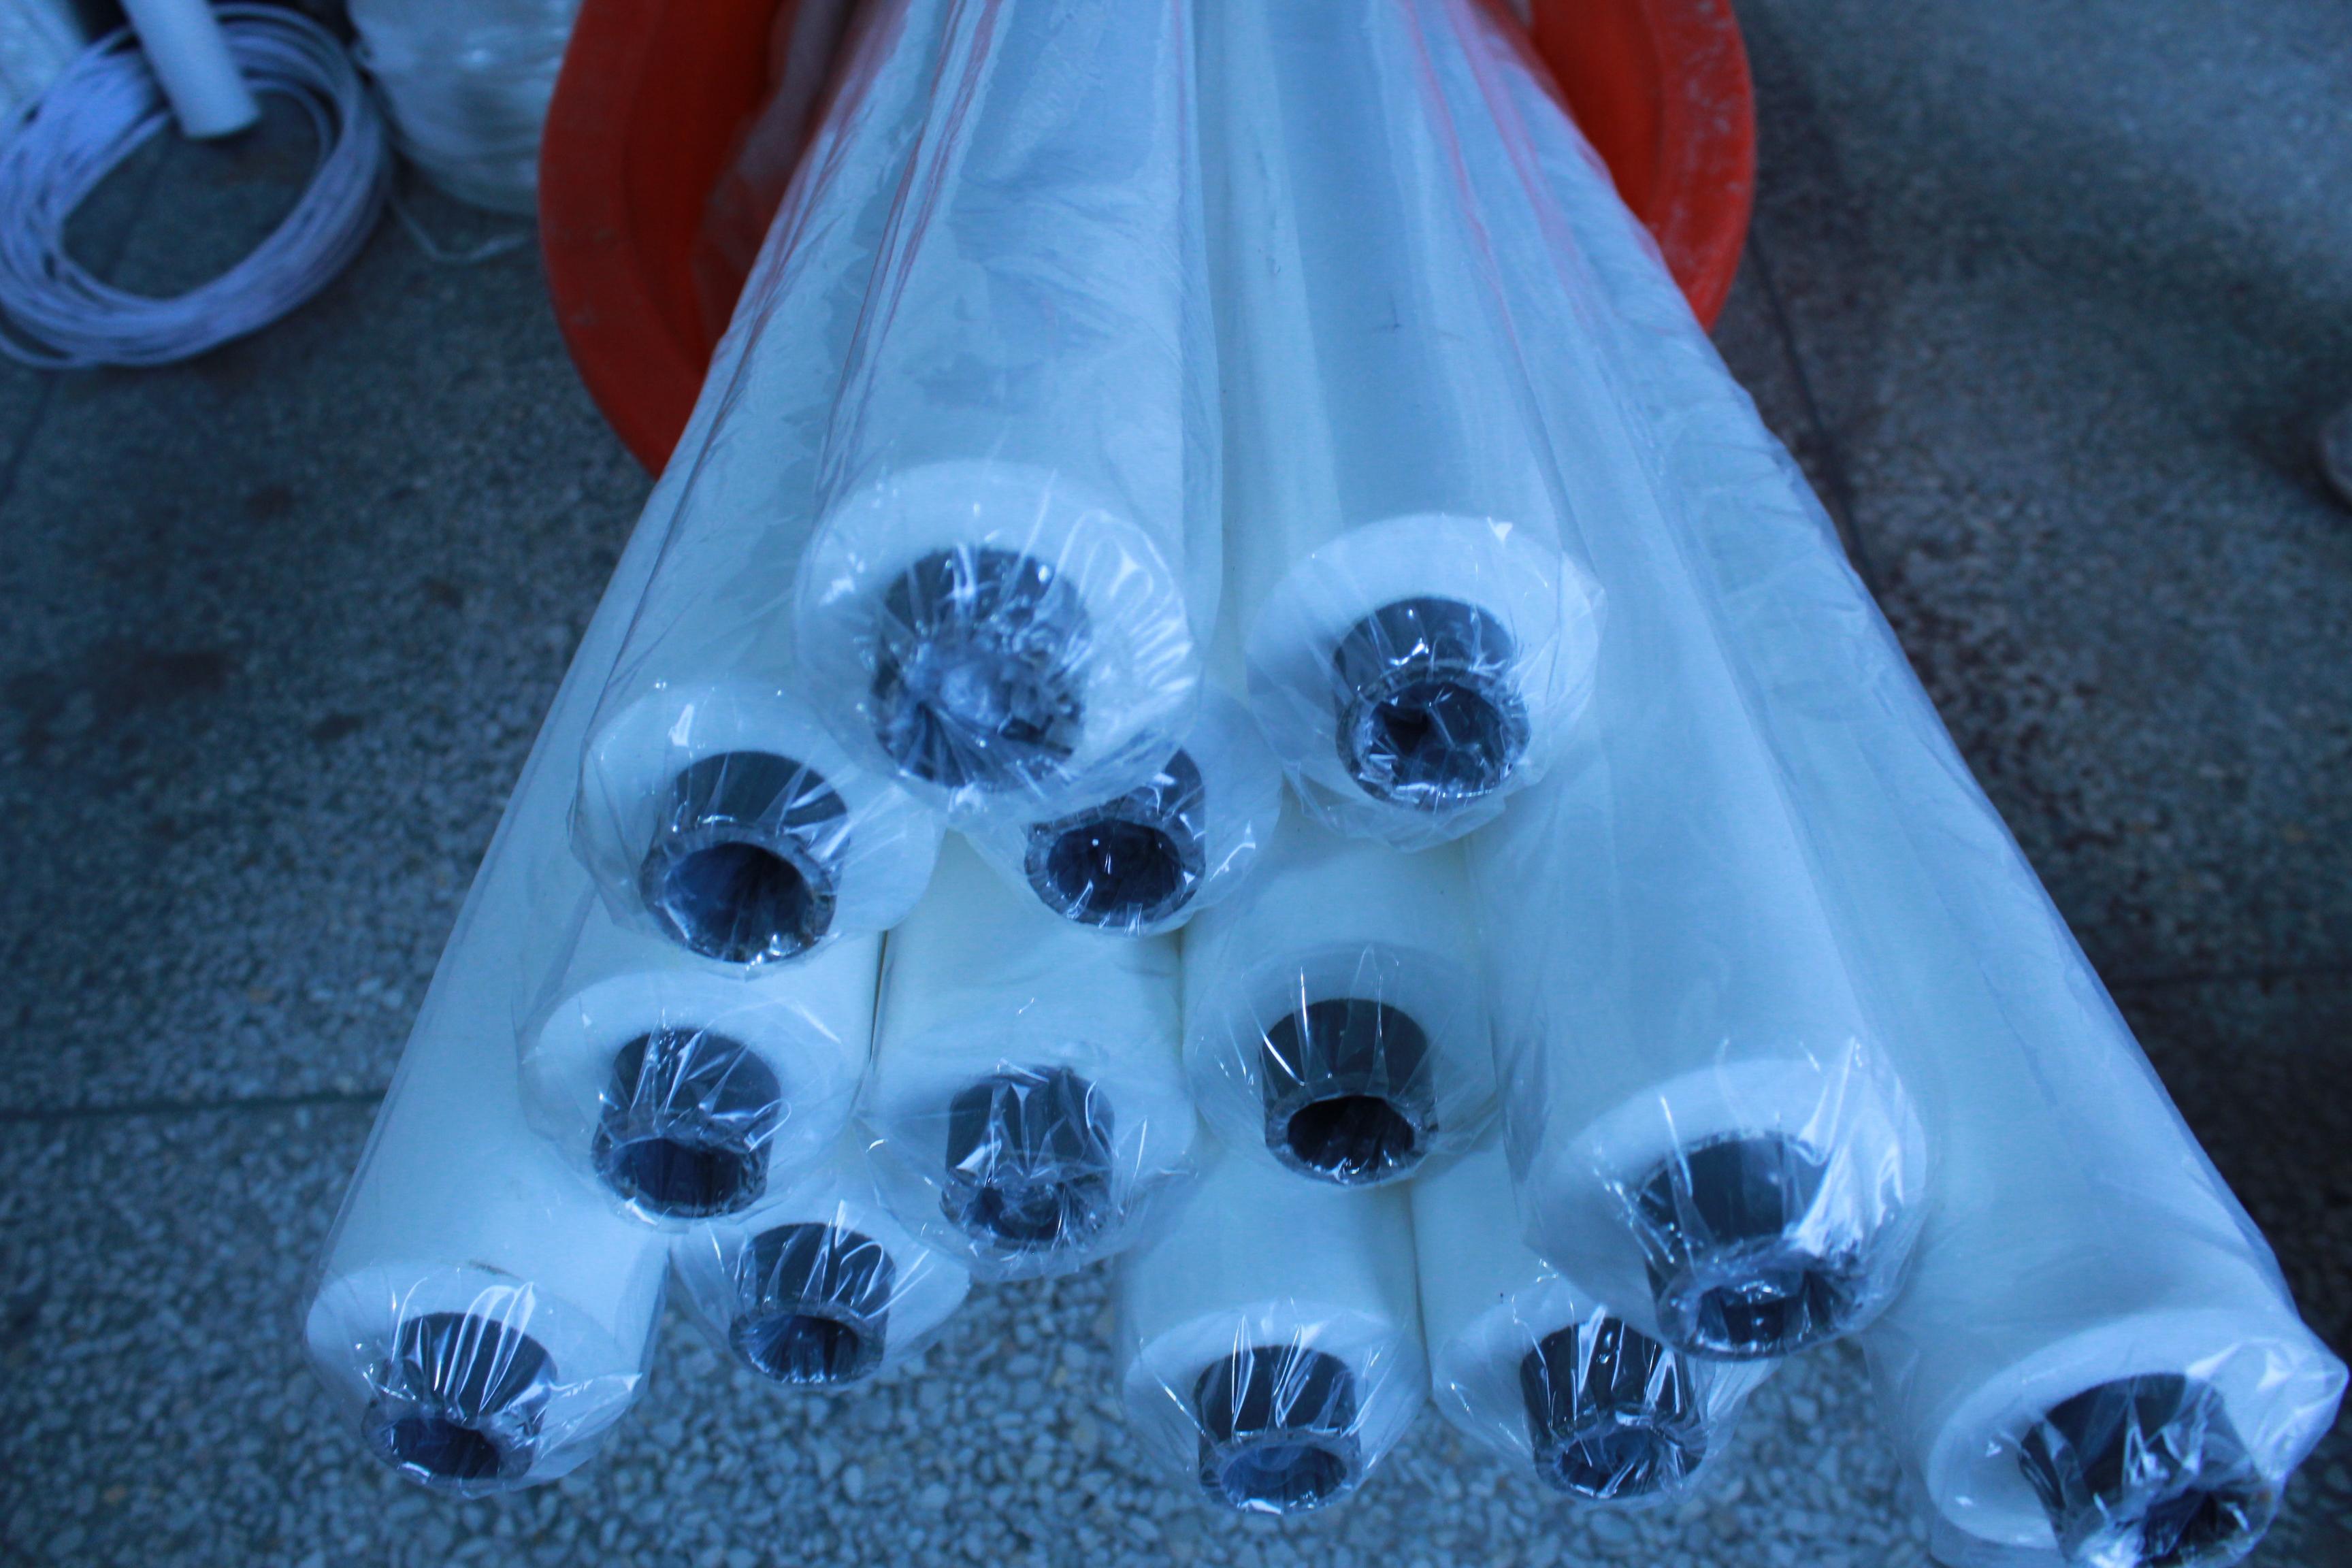 玻璃清洗机海绵辊 工具刷 海绵棒 两把刷子海绵吸水辊0083